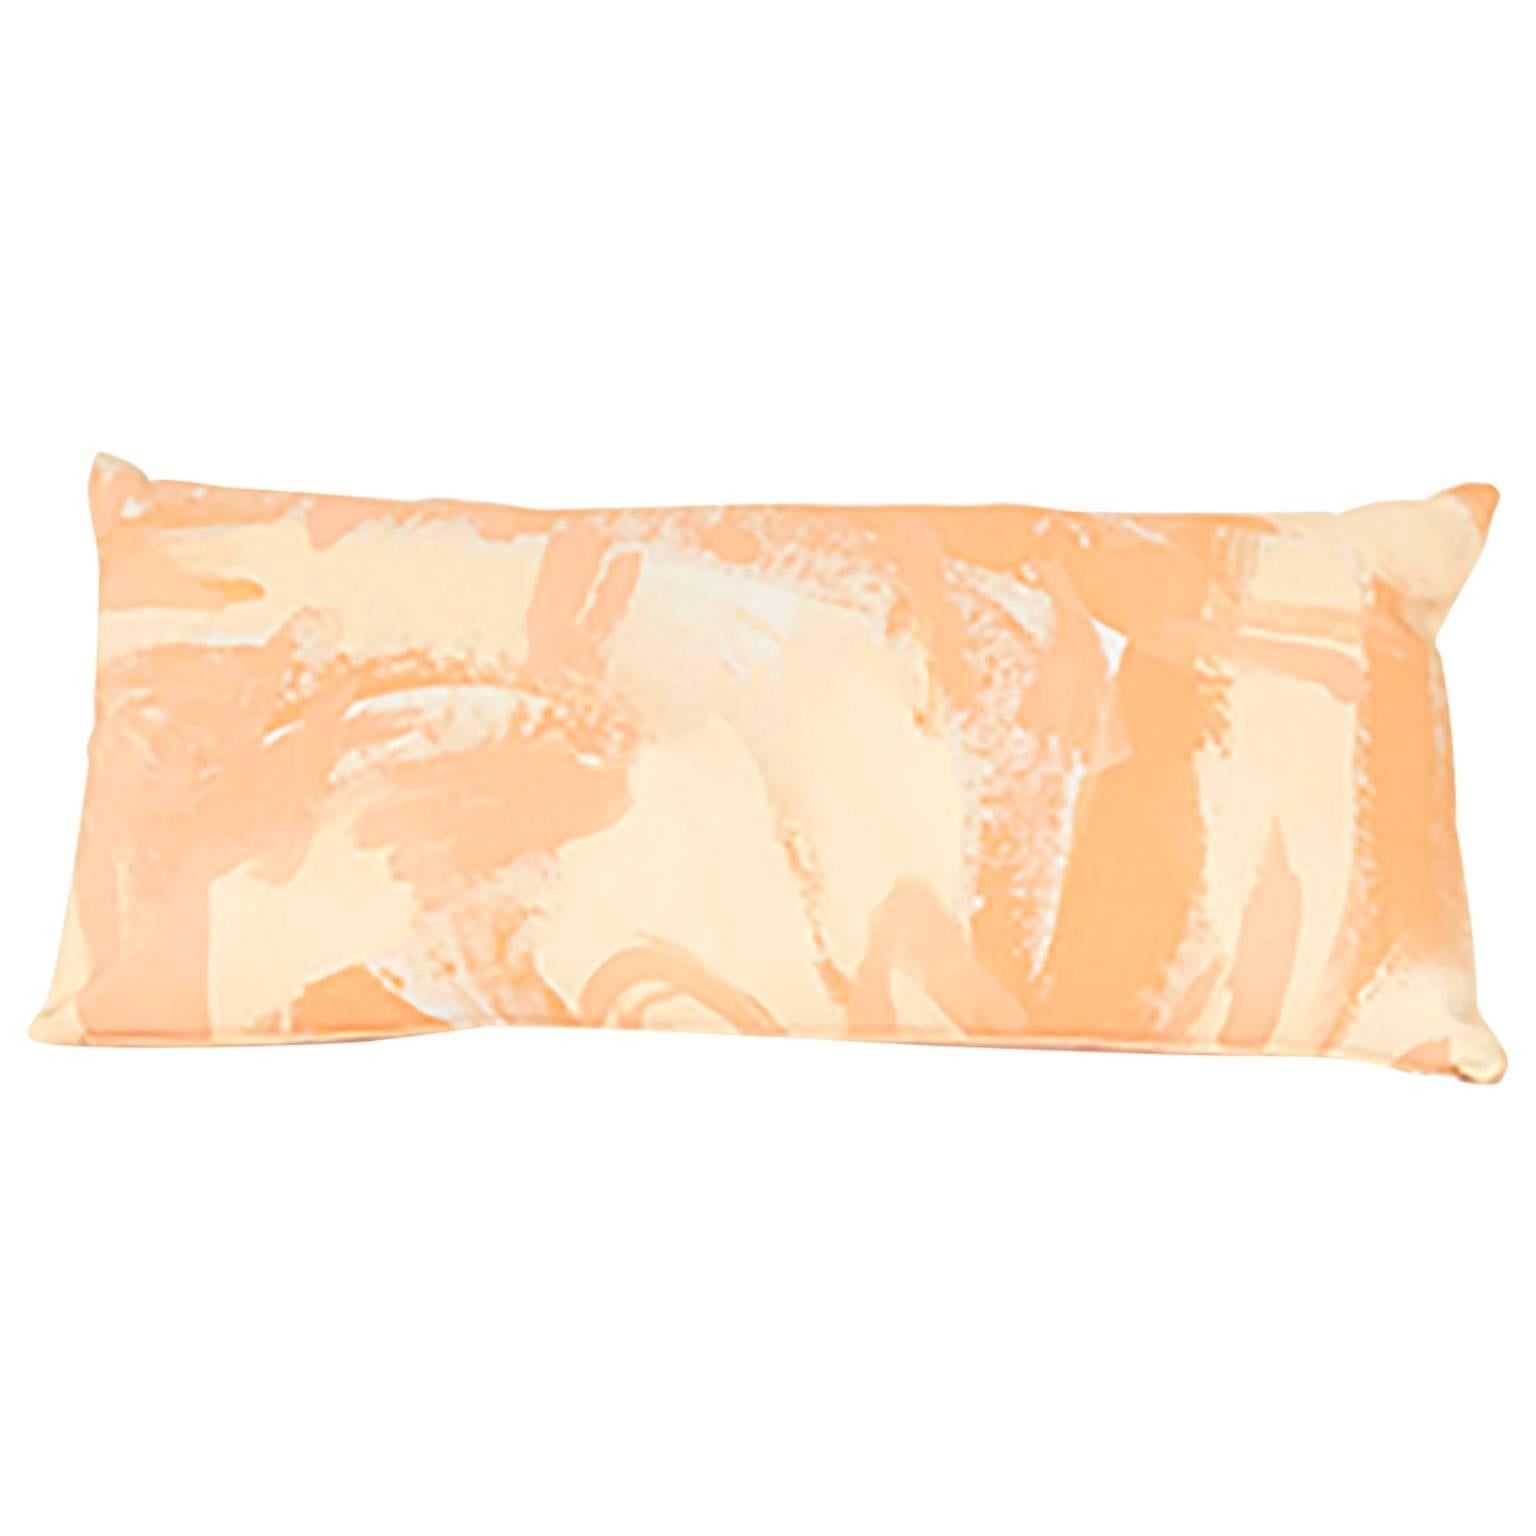 Rechteckiges Kissen aus handbemaltem Segeltuch in Pfirsich in zwei Farbtönen